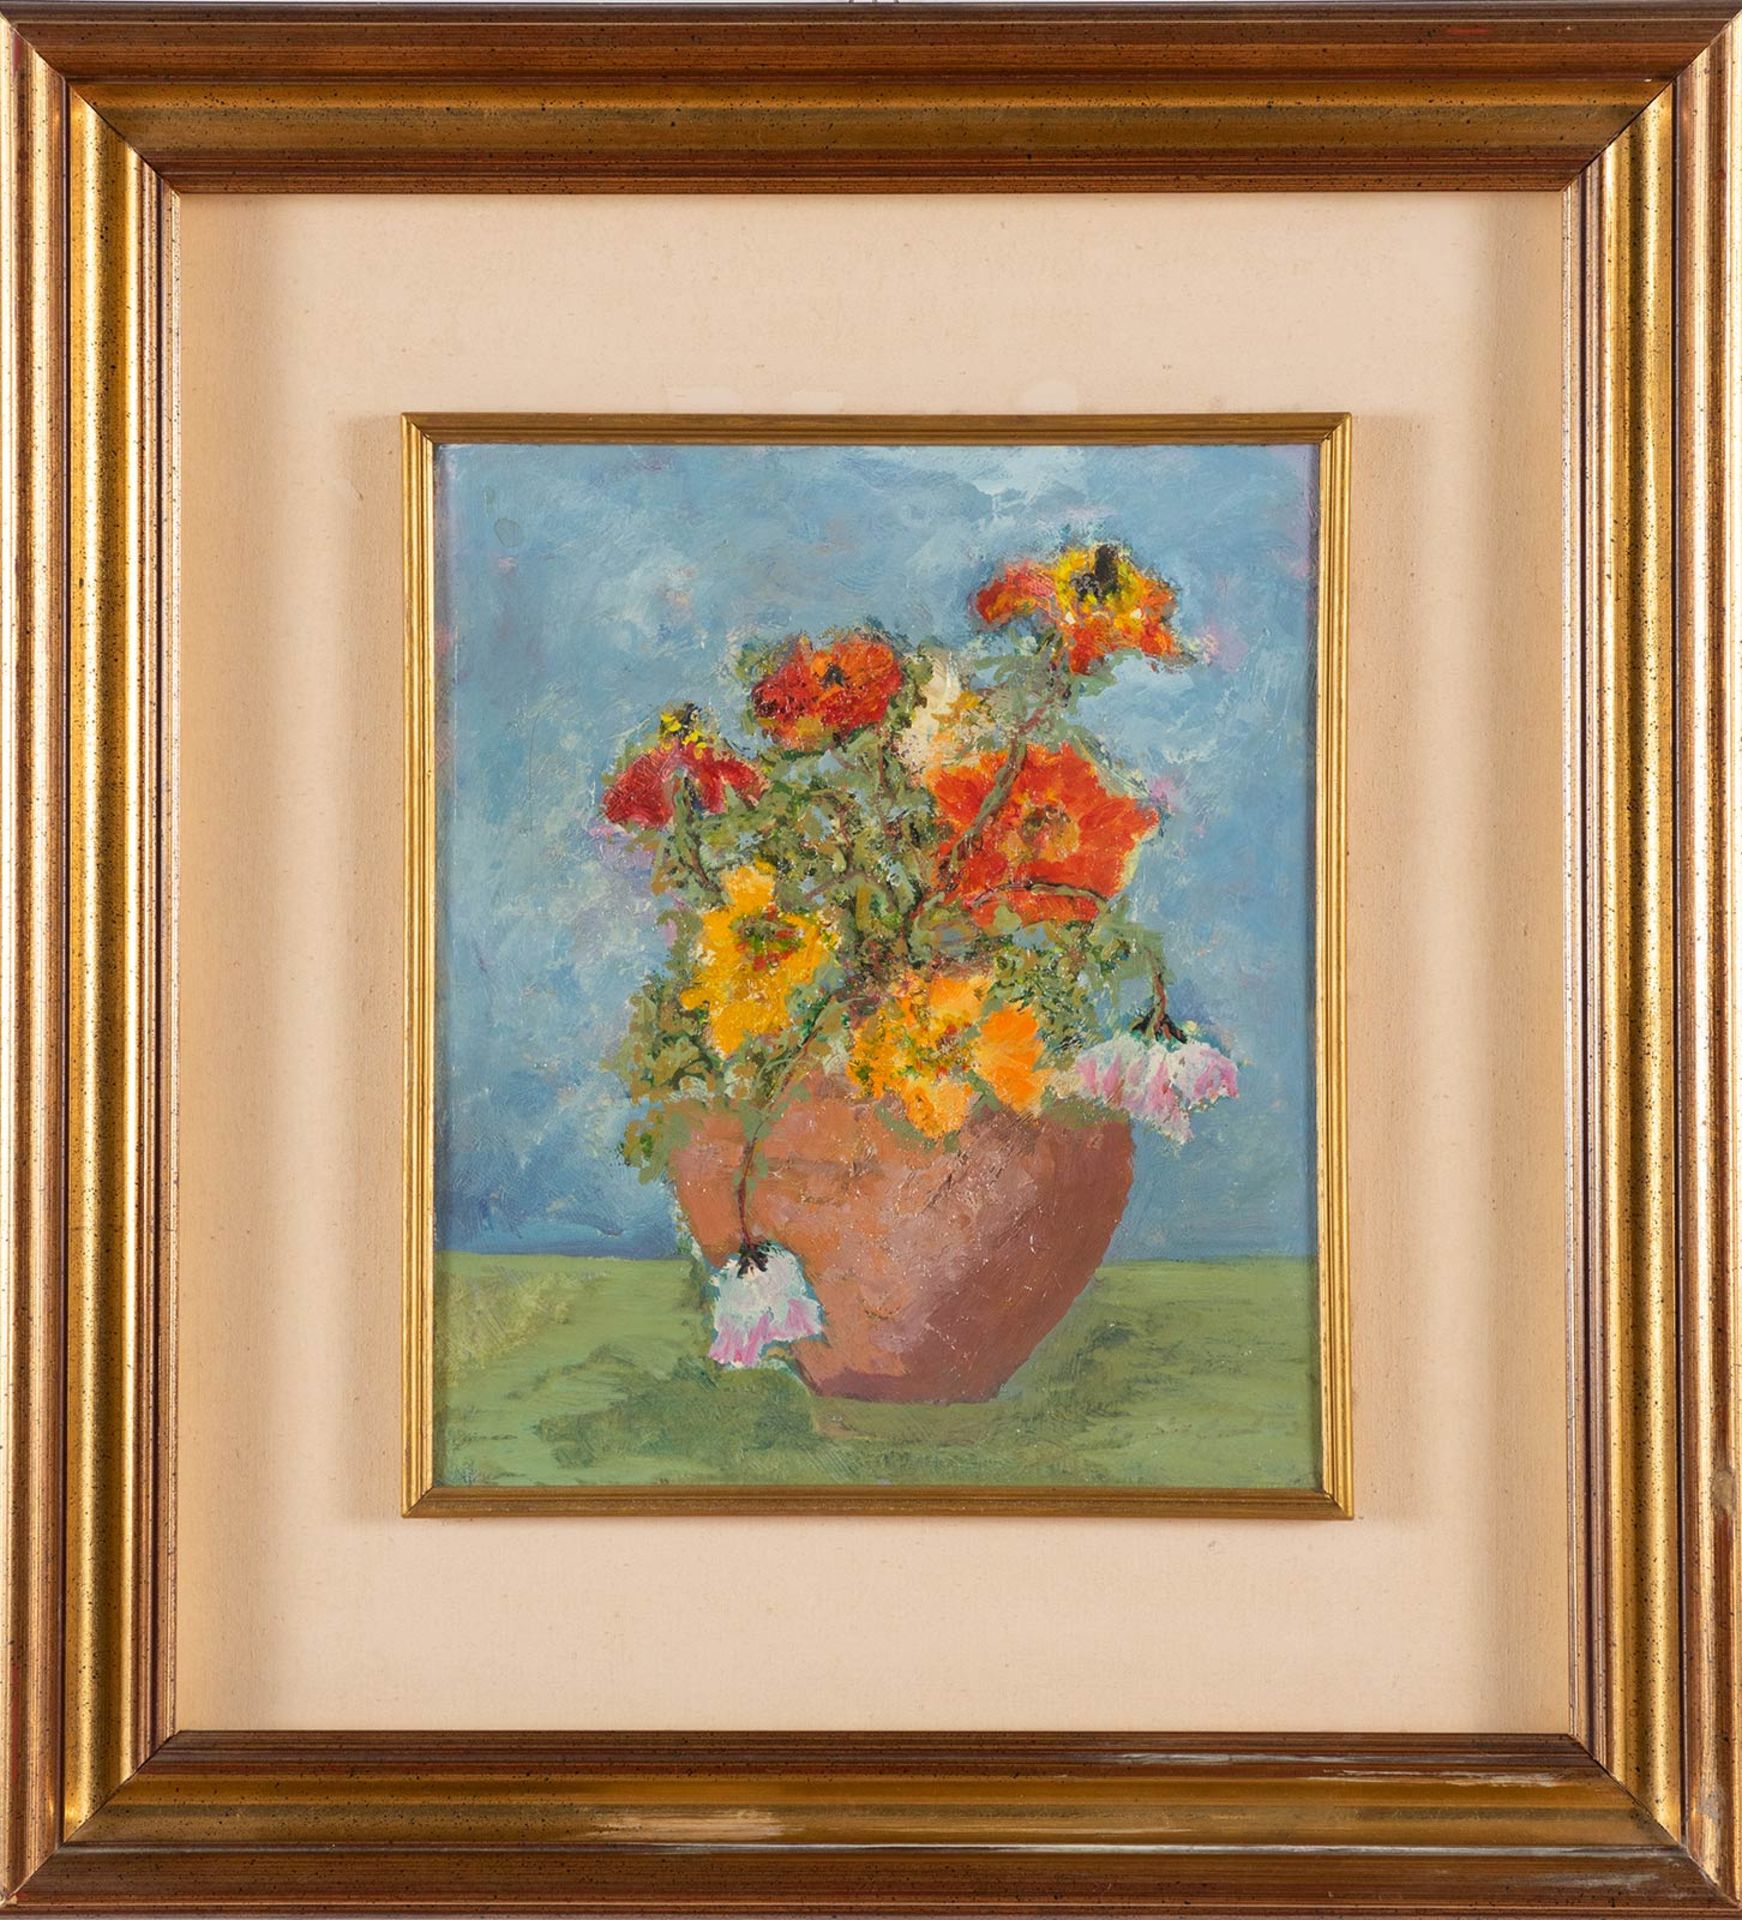 Pittore del XIX-XX sec., “Vaso con fiori”.